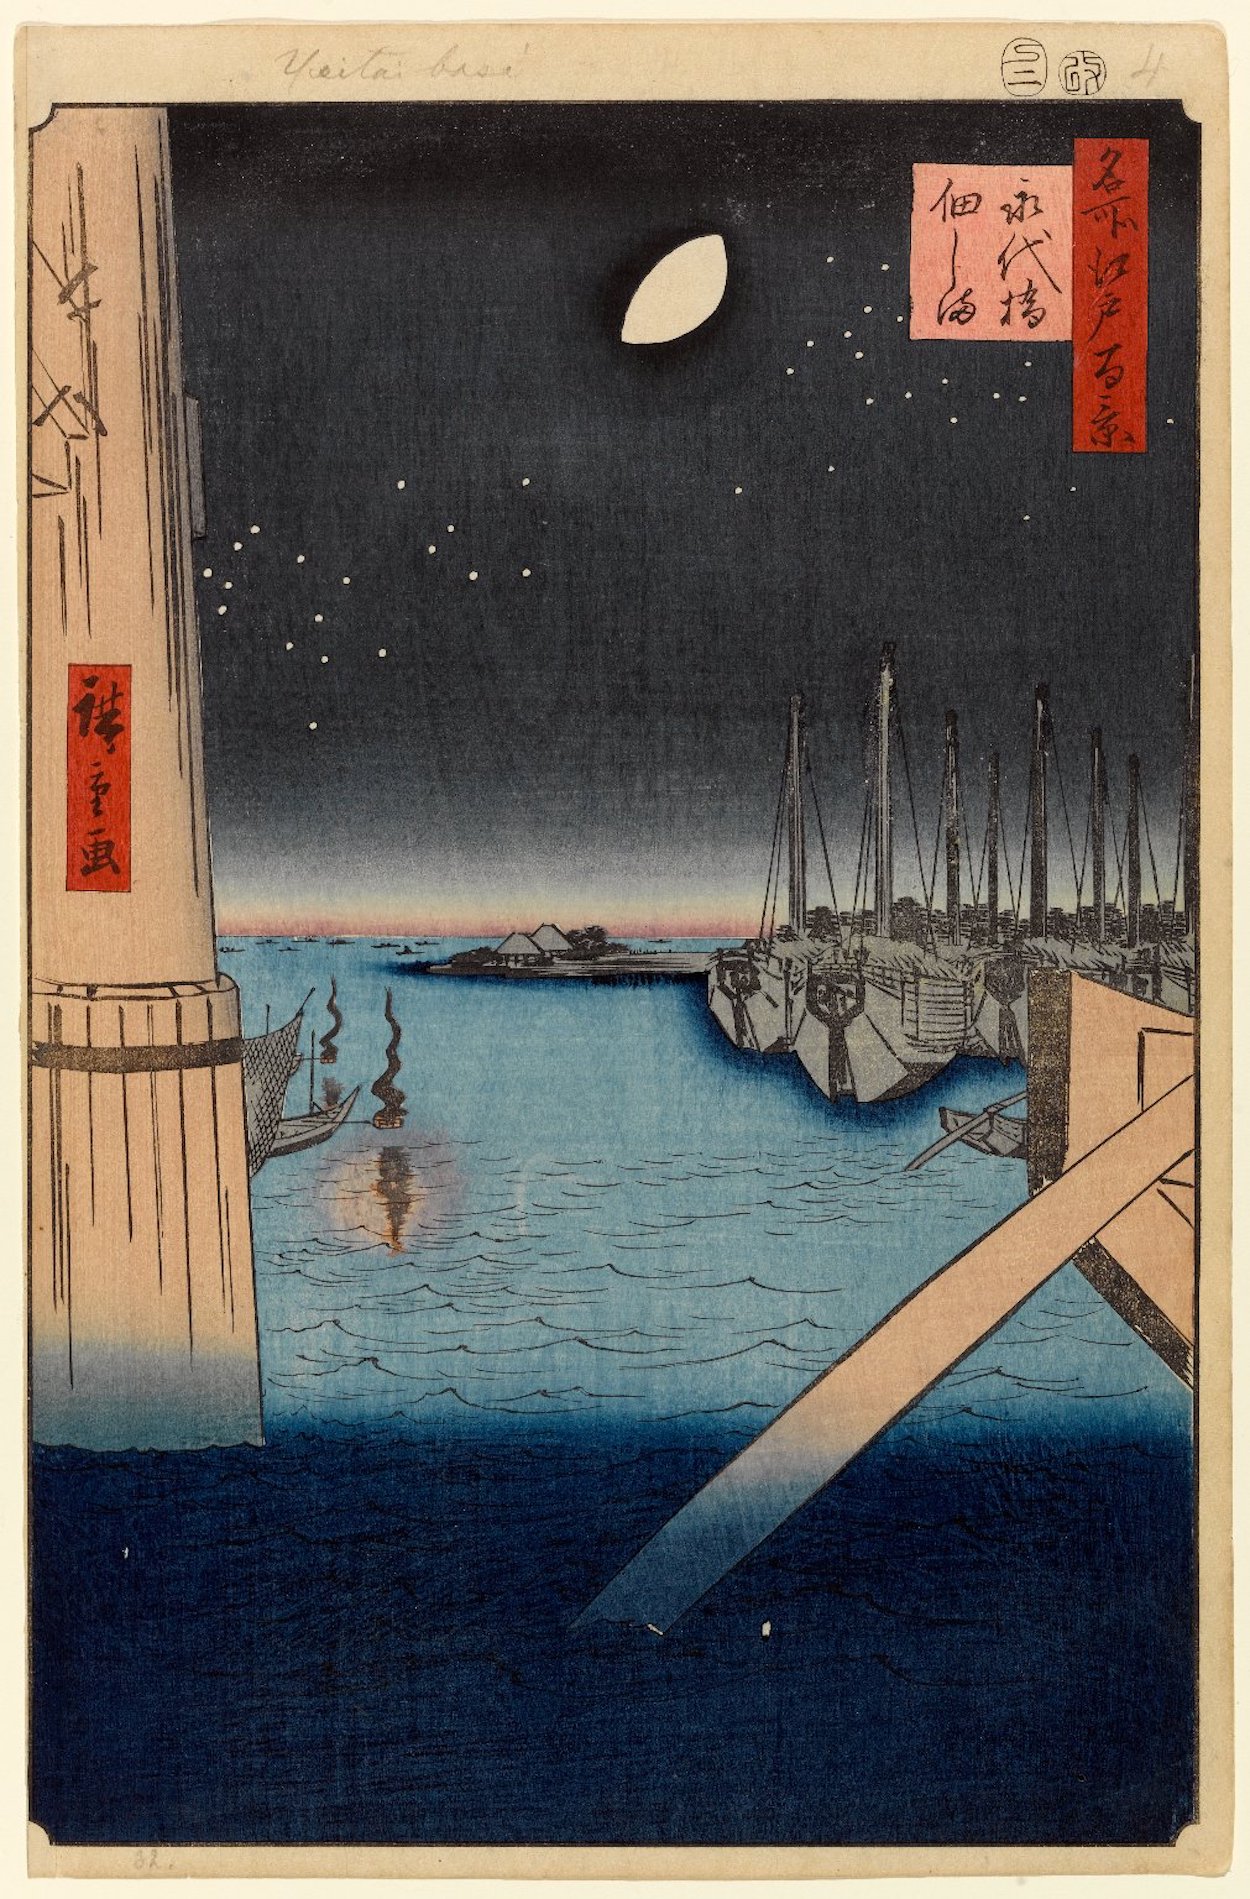 名所江戸百景　永代橋佃しま （永代橋佃島）4番 by  Hiroshige - 1857年 - 13 3/8 x 9 インチ 